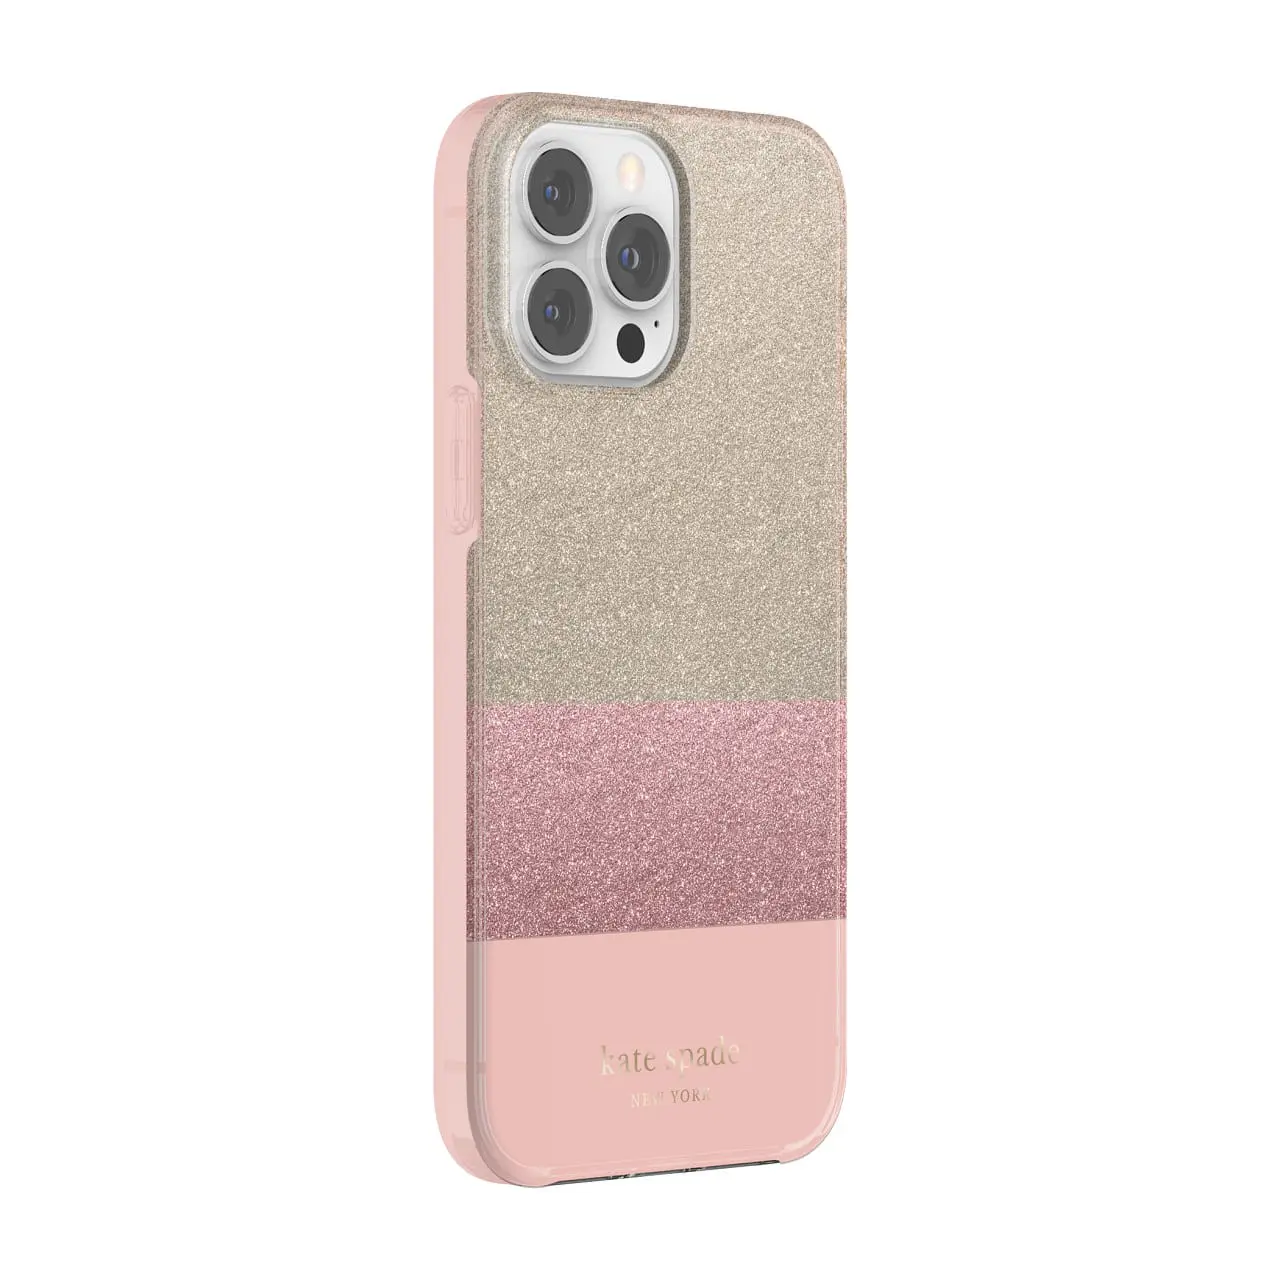 เคส Kate Spade New York รุ่น Protective Hardshell Case - iPhone 13 Pro Max - Glitter Block Pink/Quartz Pink/Pink Glitter/Gold Glitter